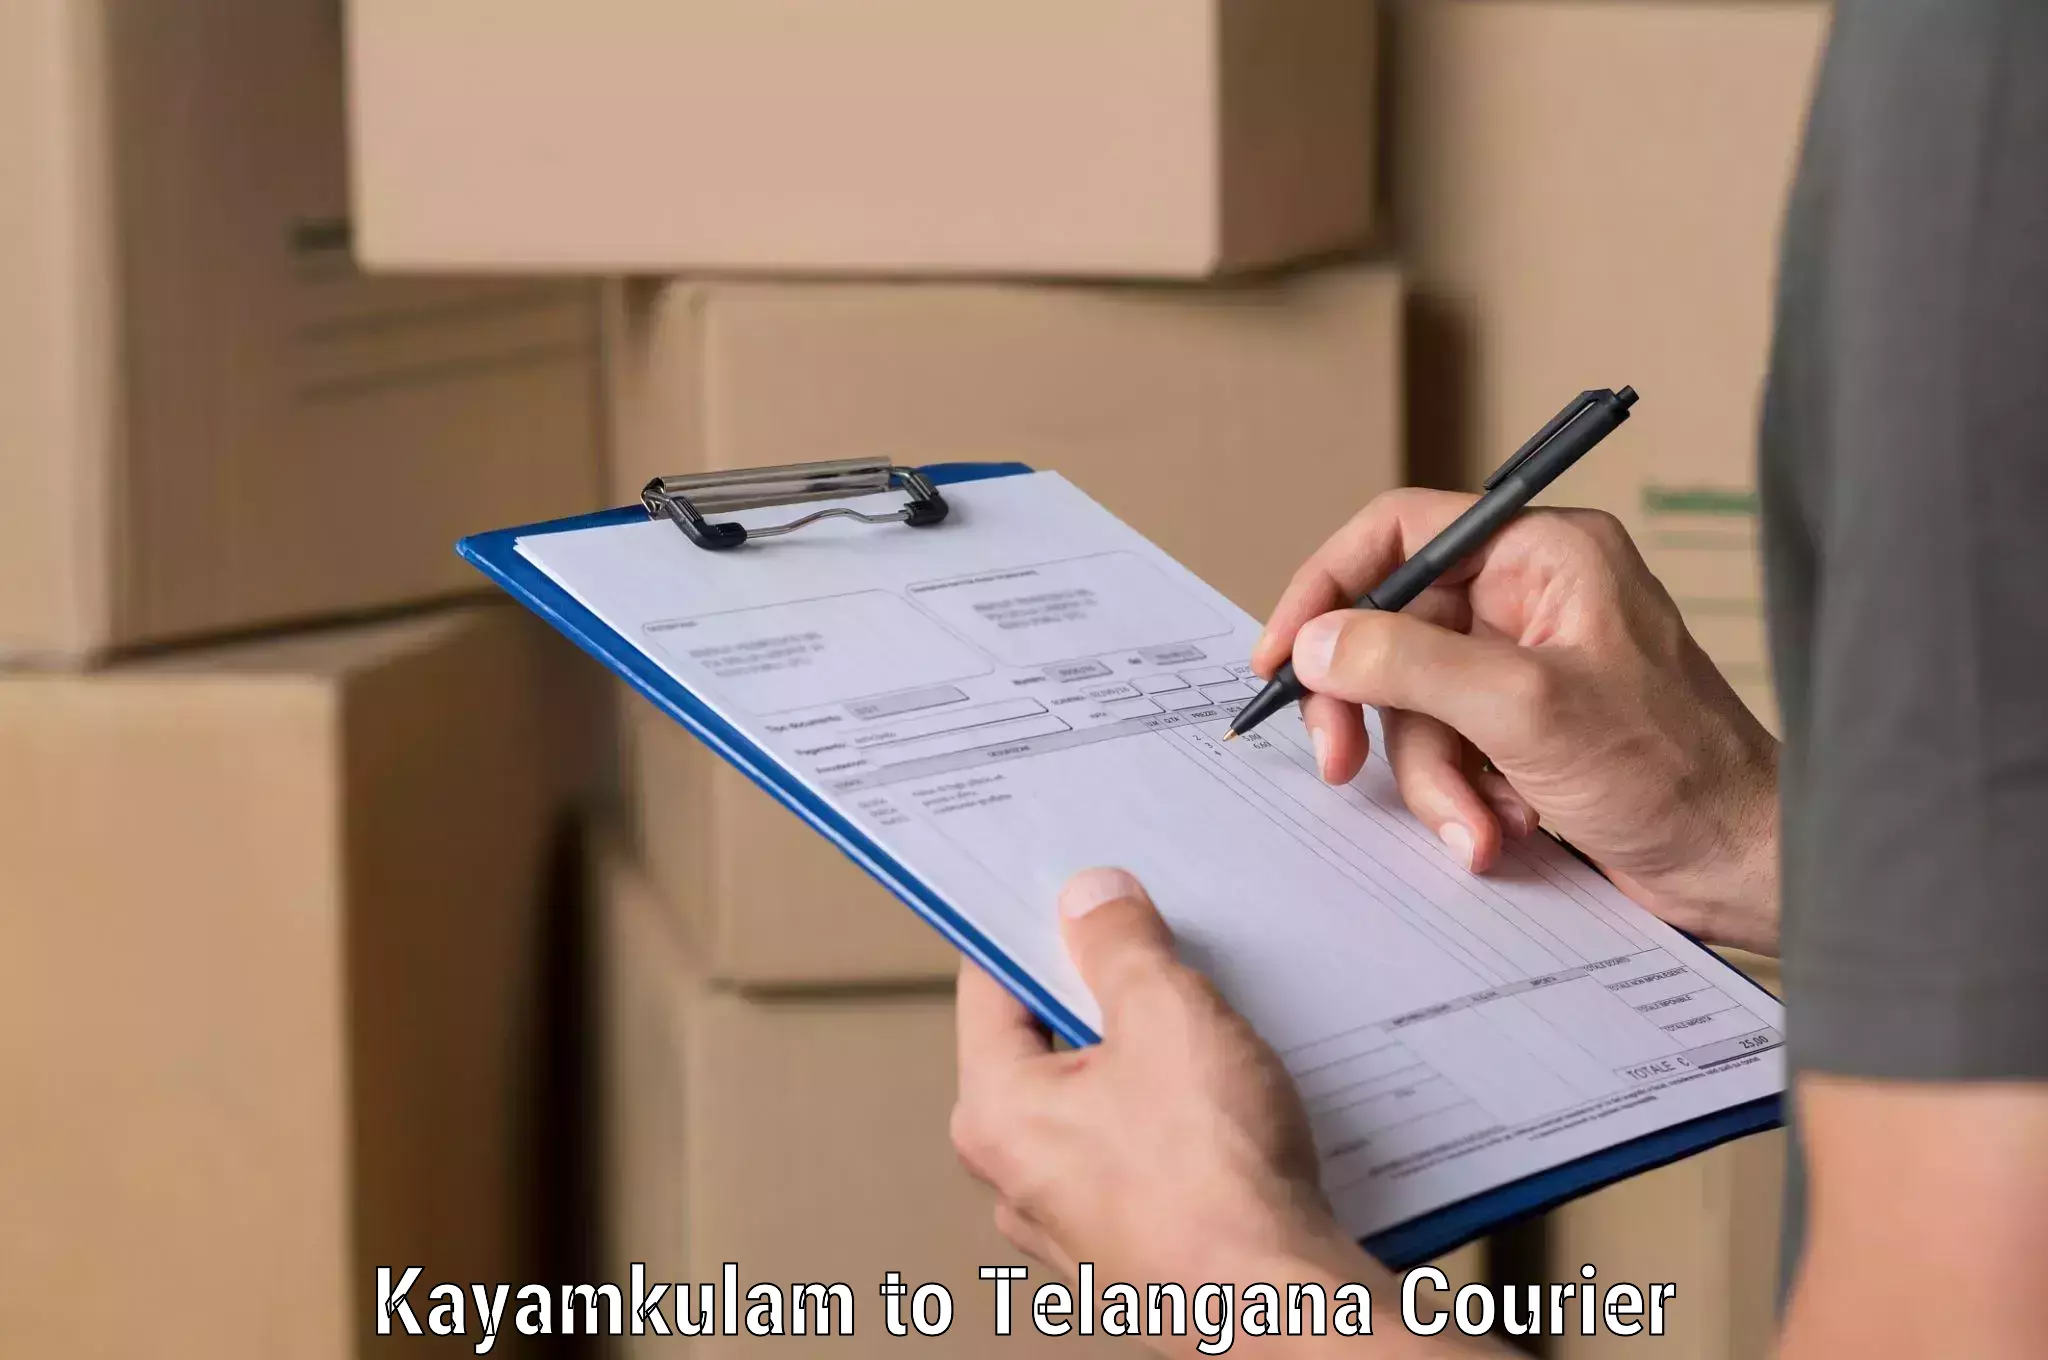 International courier networks Kayamkulam to Kadthal